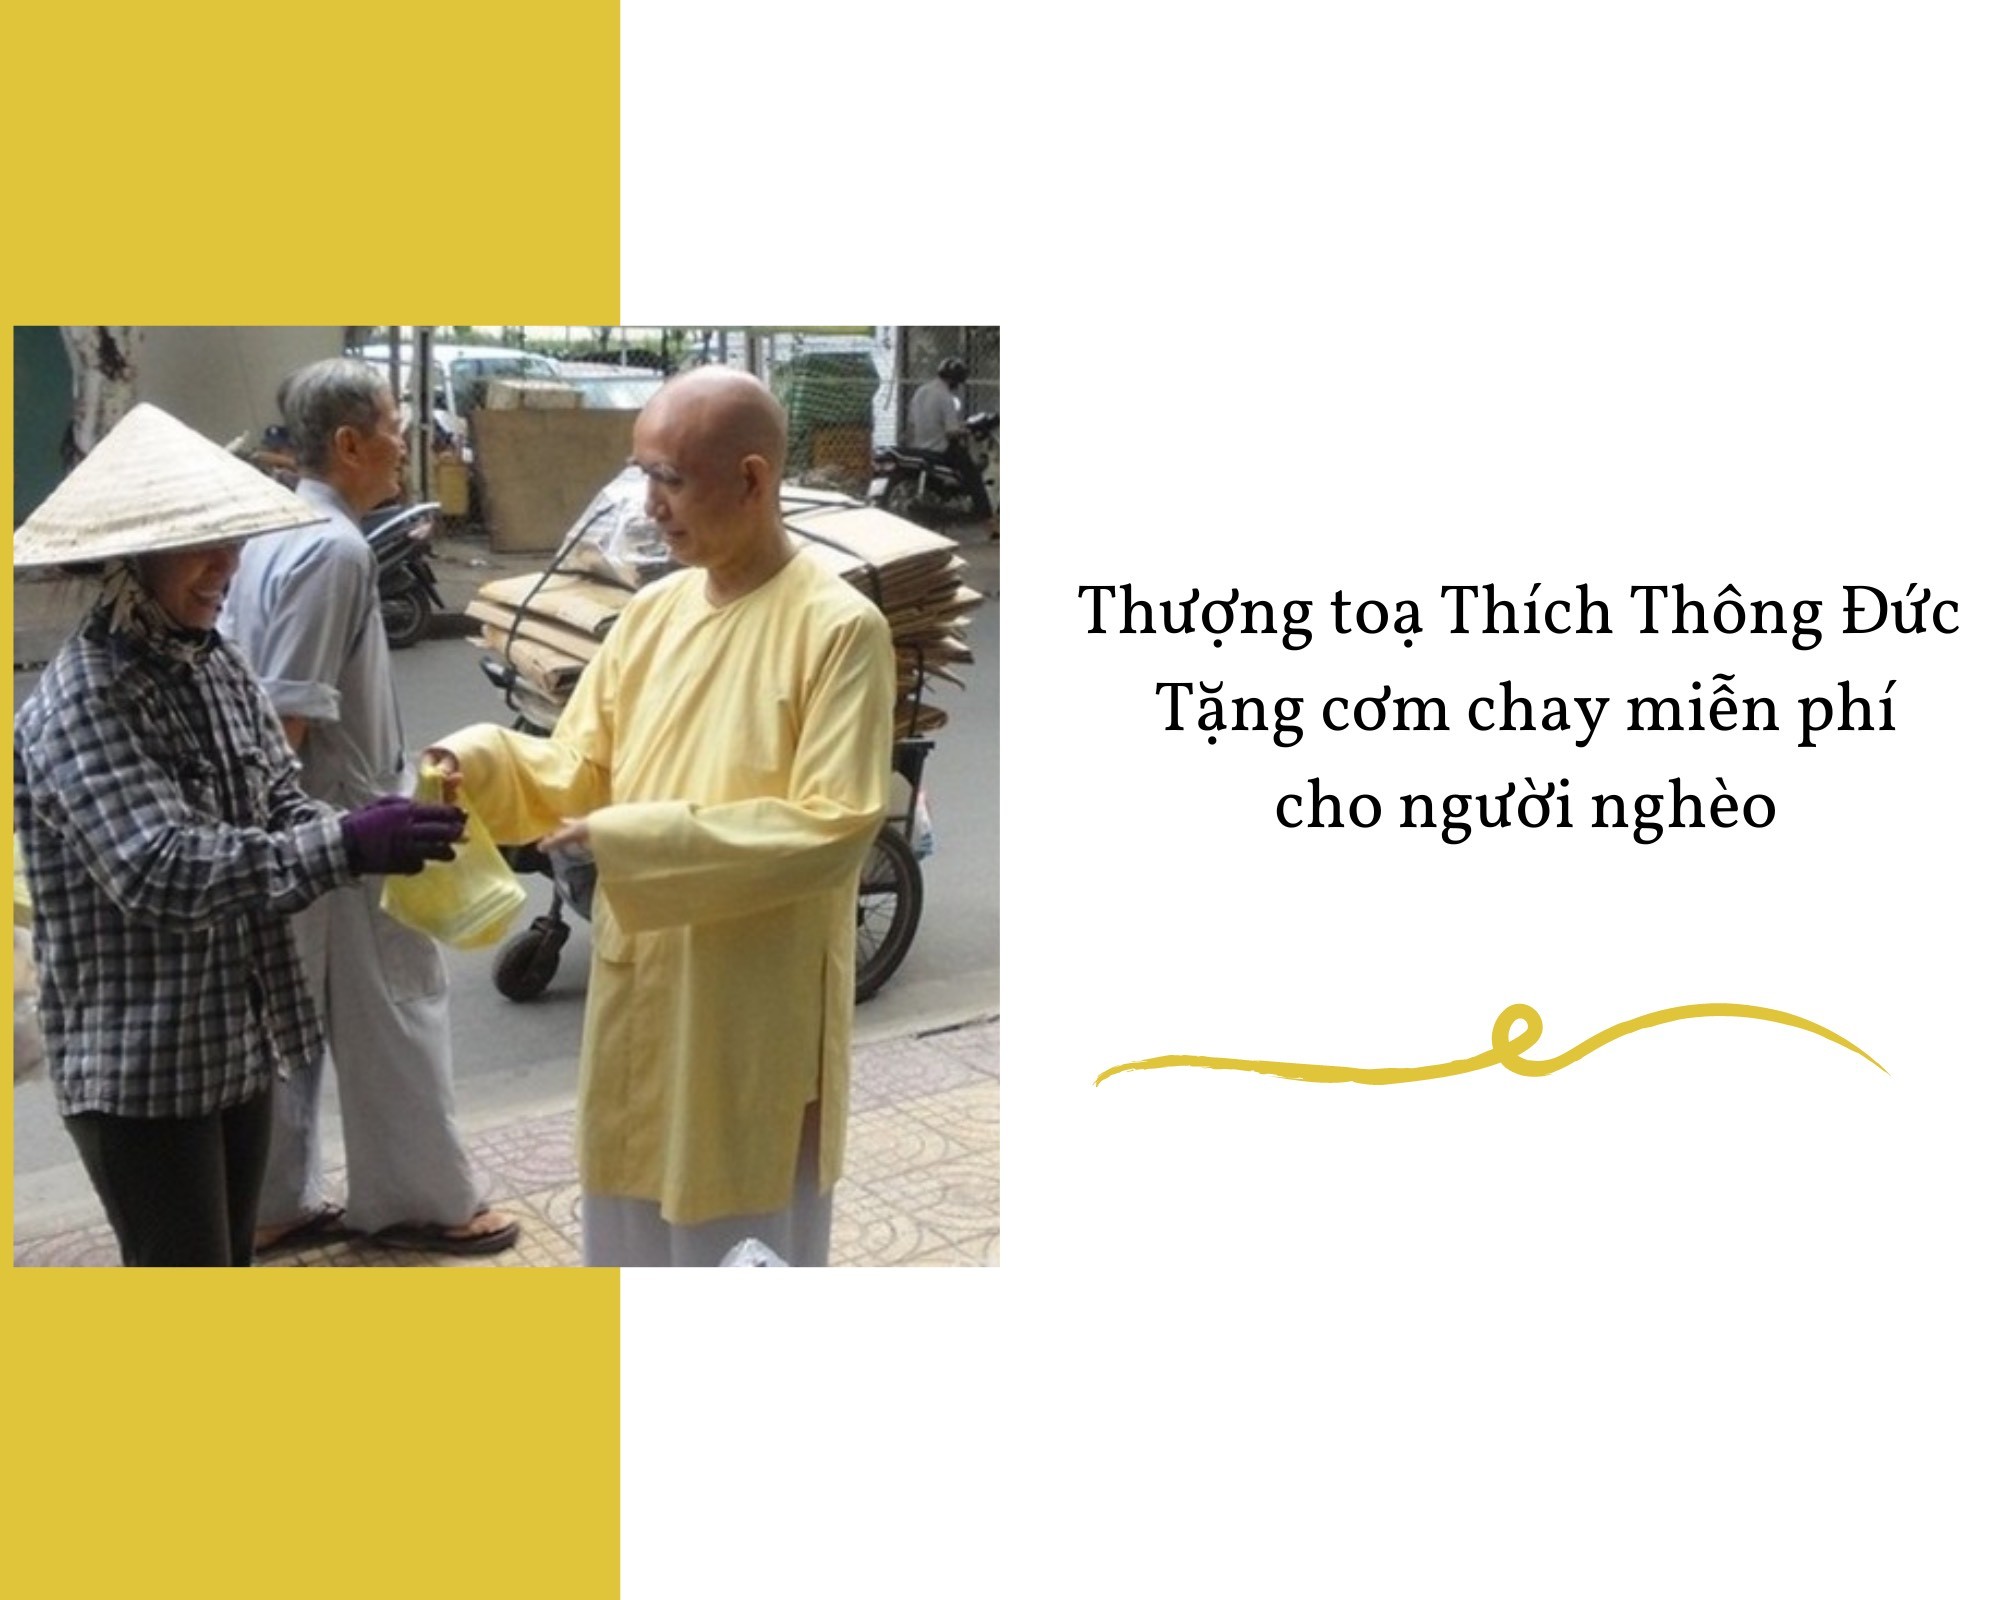 thich-thong-duc-3-1663424229.jpg